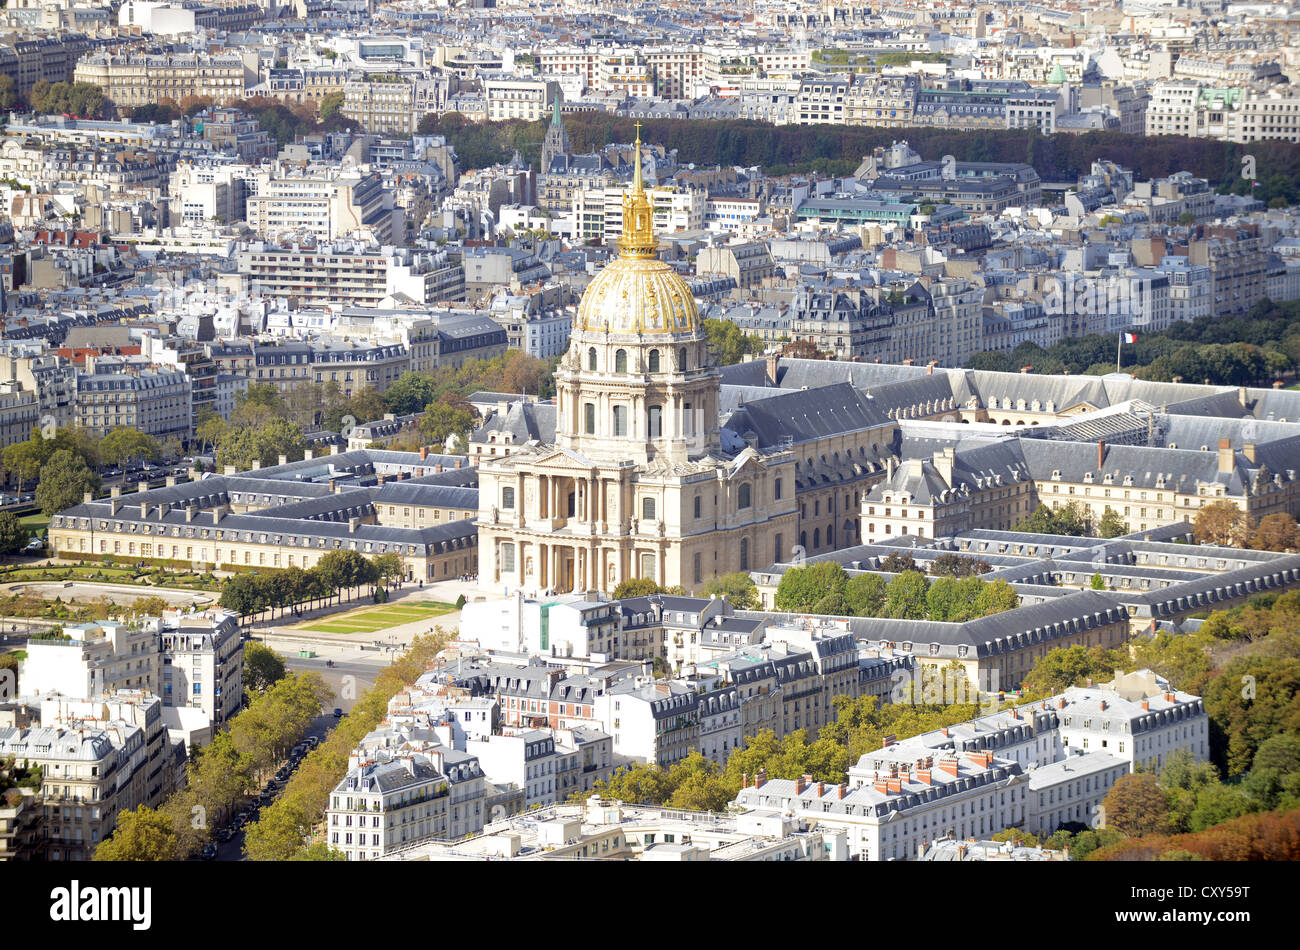 Les Invalides, Paris, France. Golden dome cathedral of the church at 'Les Invalides' Paris, France Stock Photo